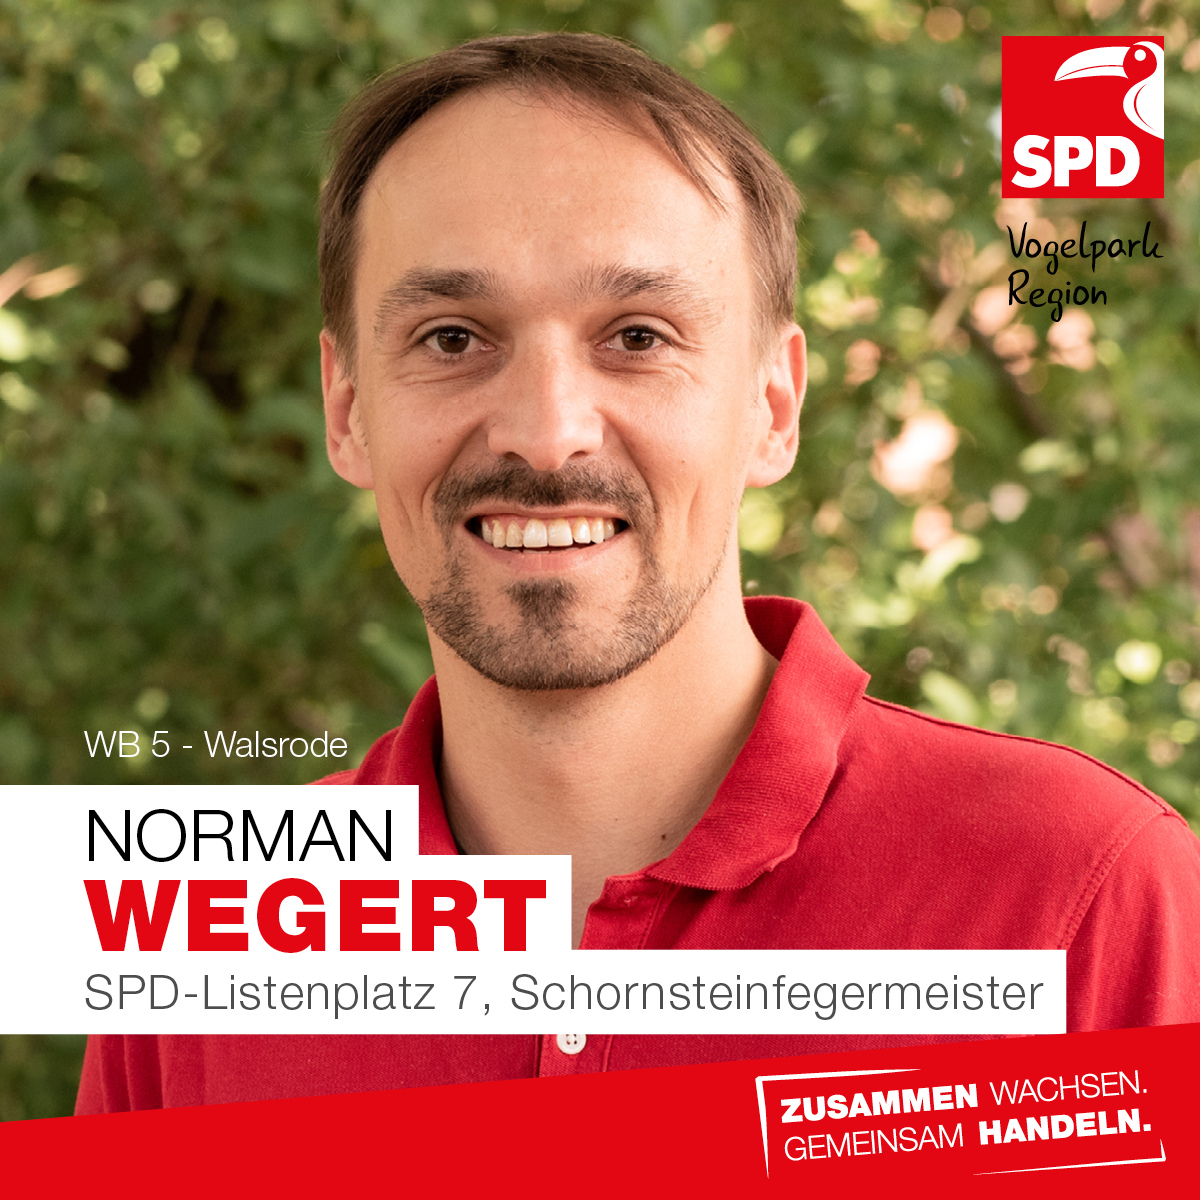 Norman Wegert